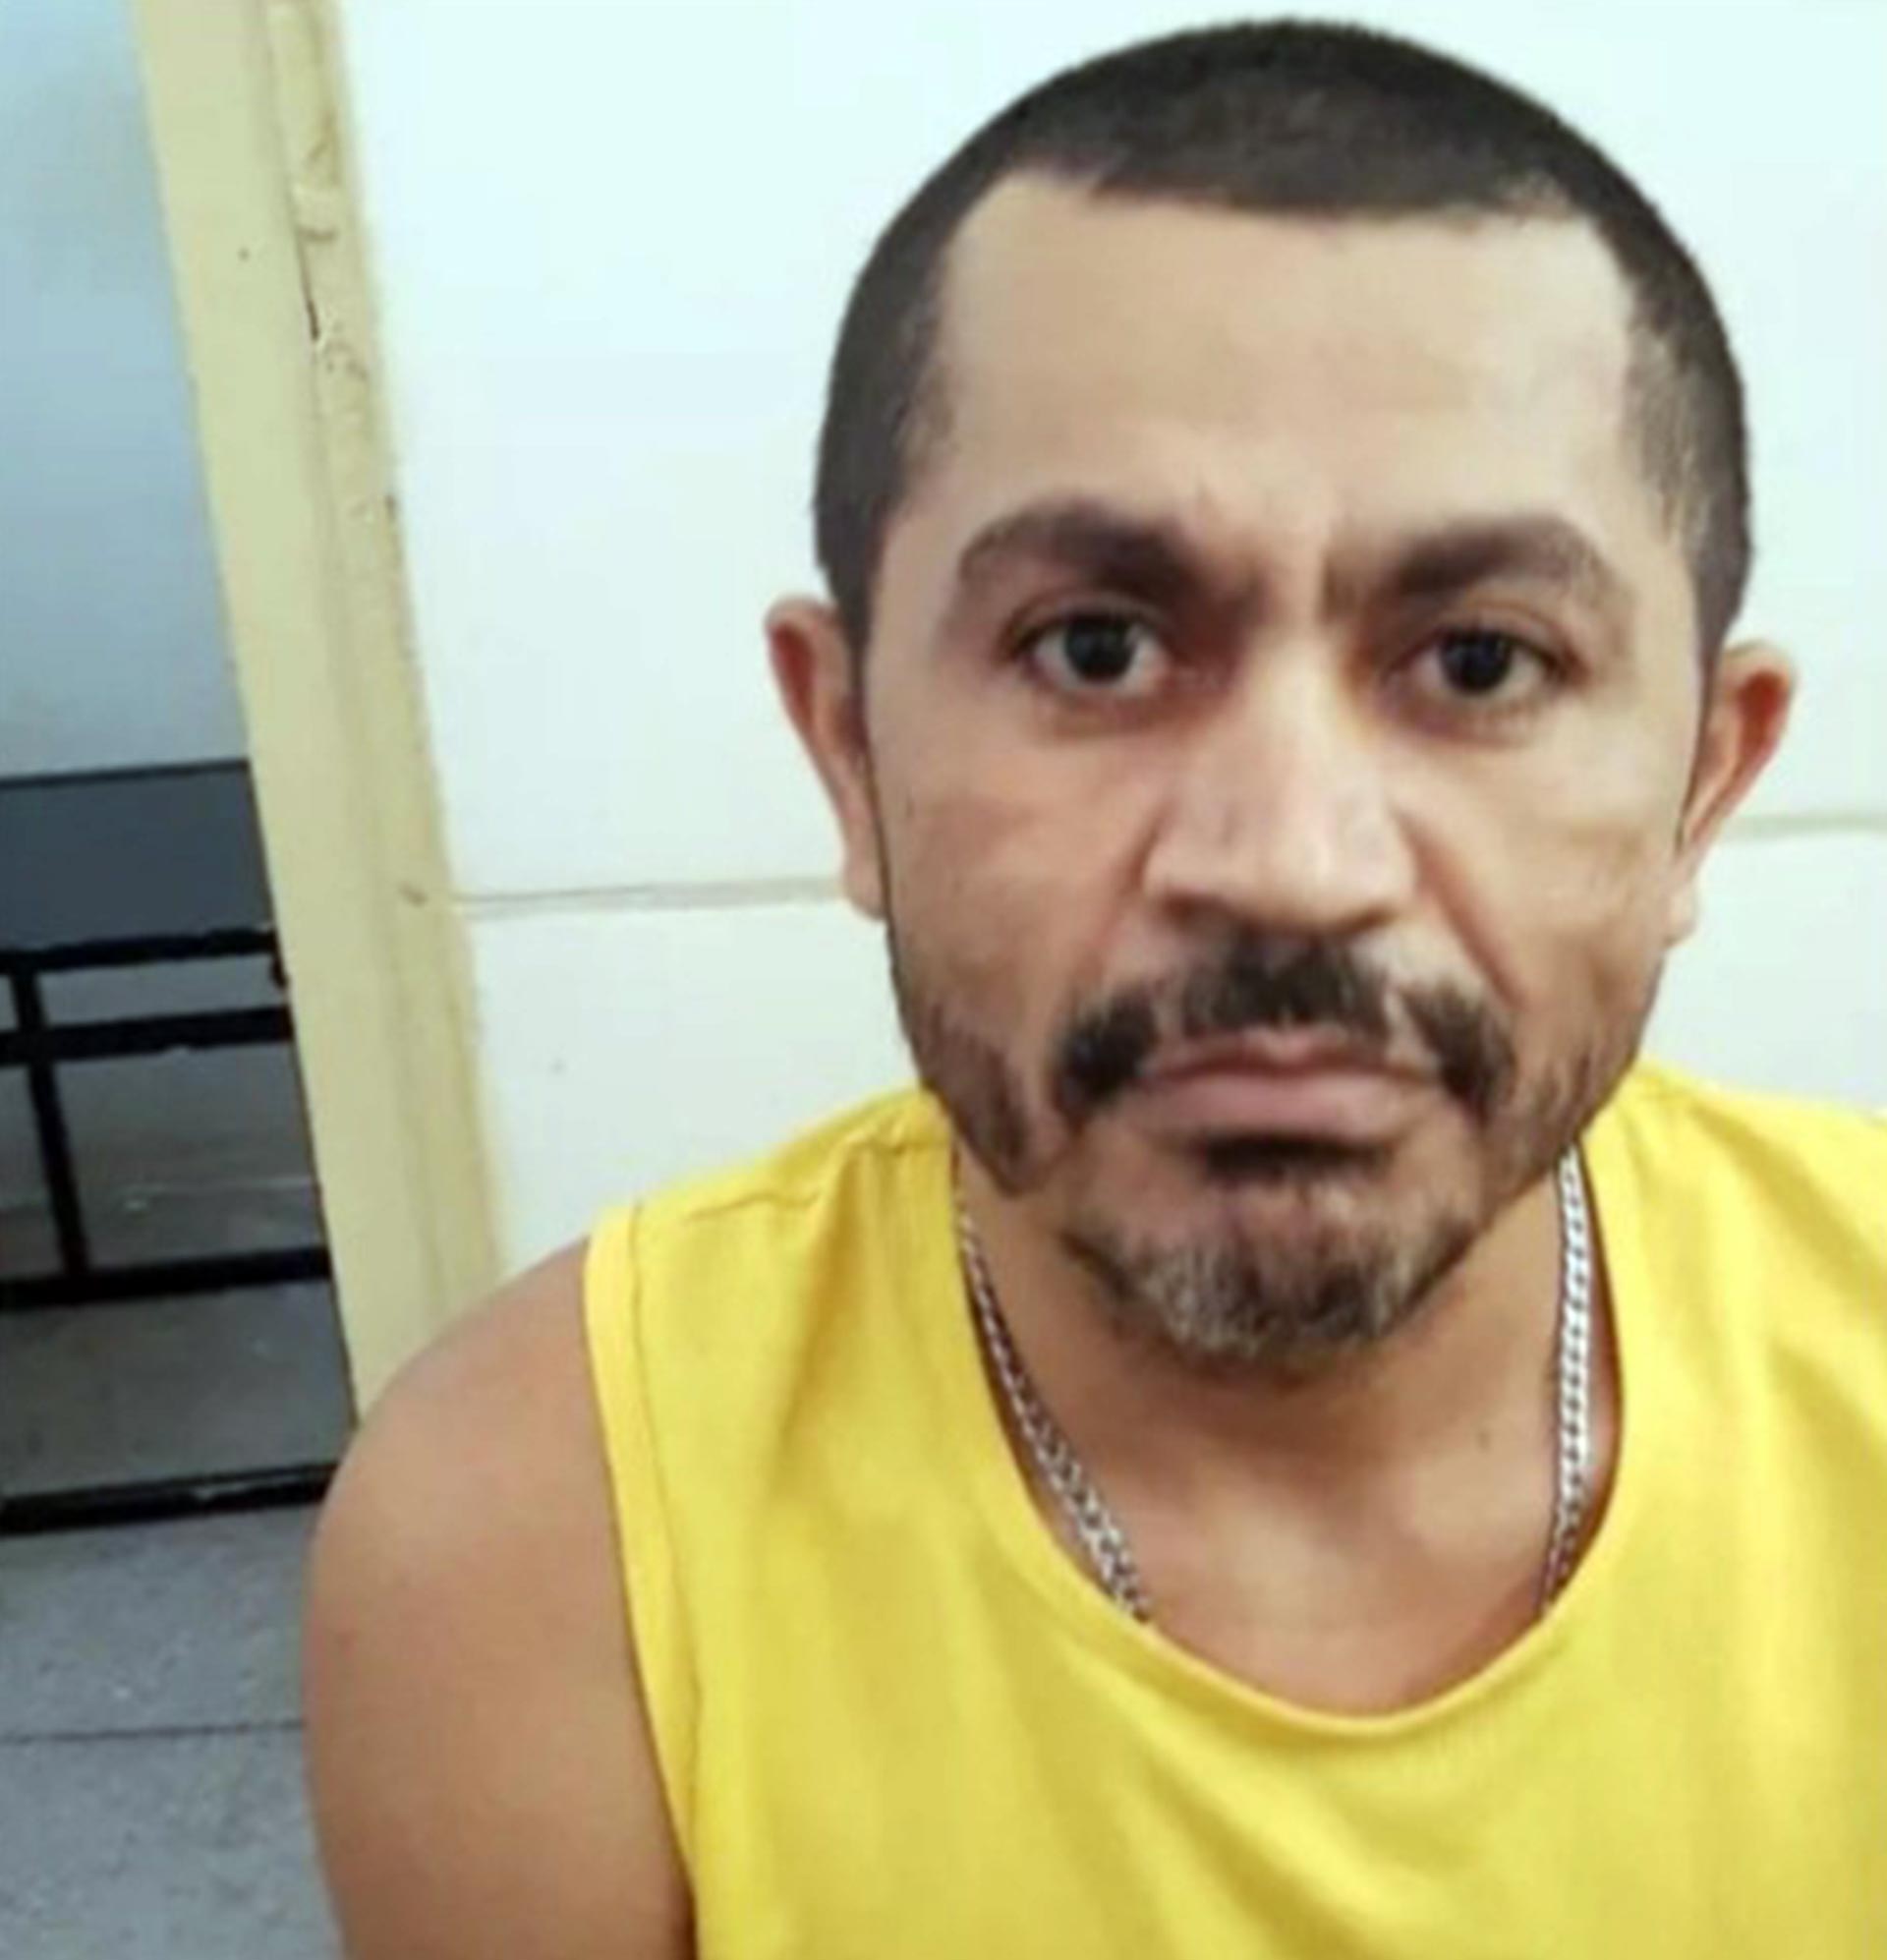 Marcelo da Silva, 40 años, confesó el brutal crimen. Todavía no se sabe por qué la mató